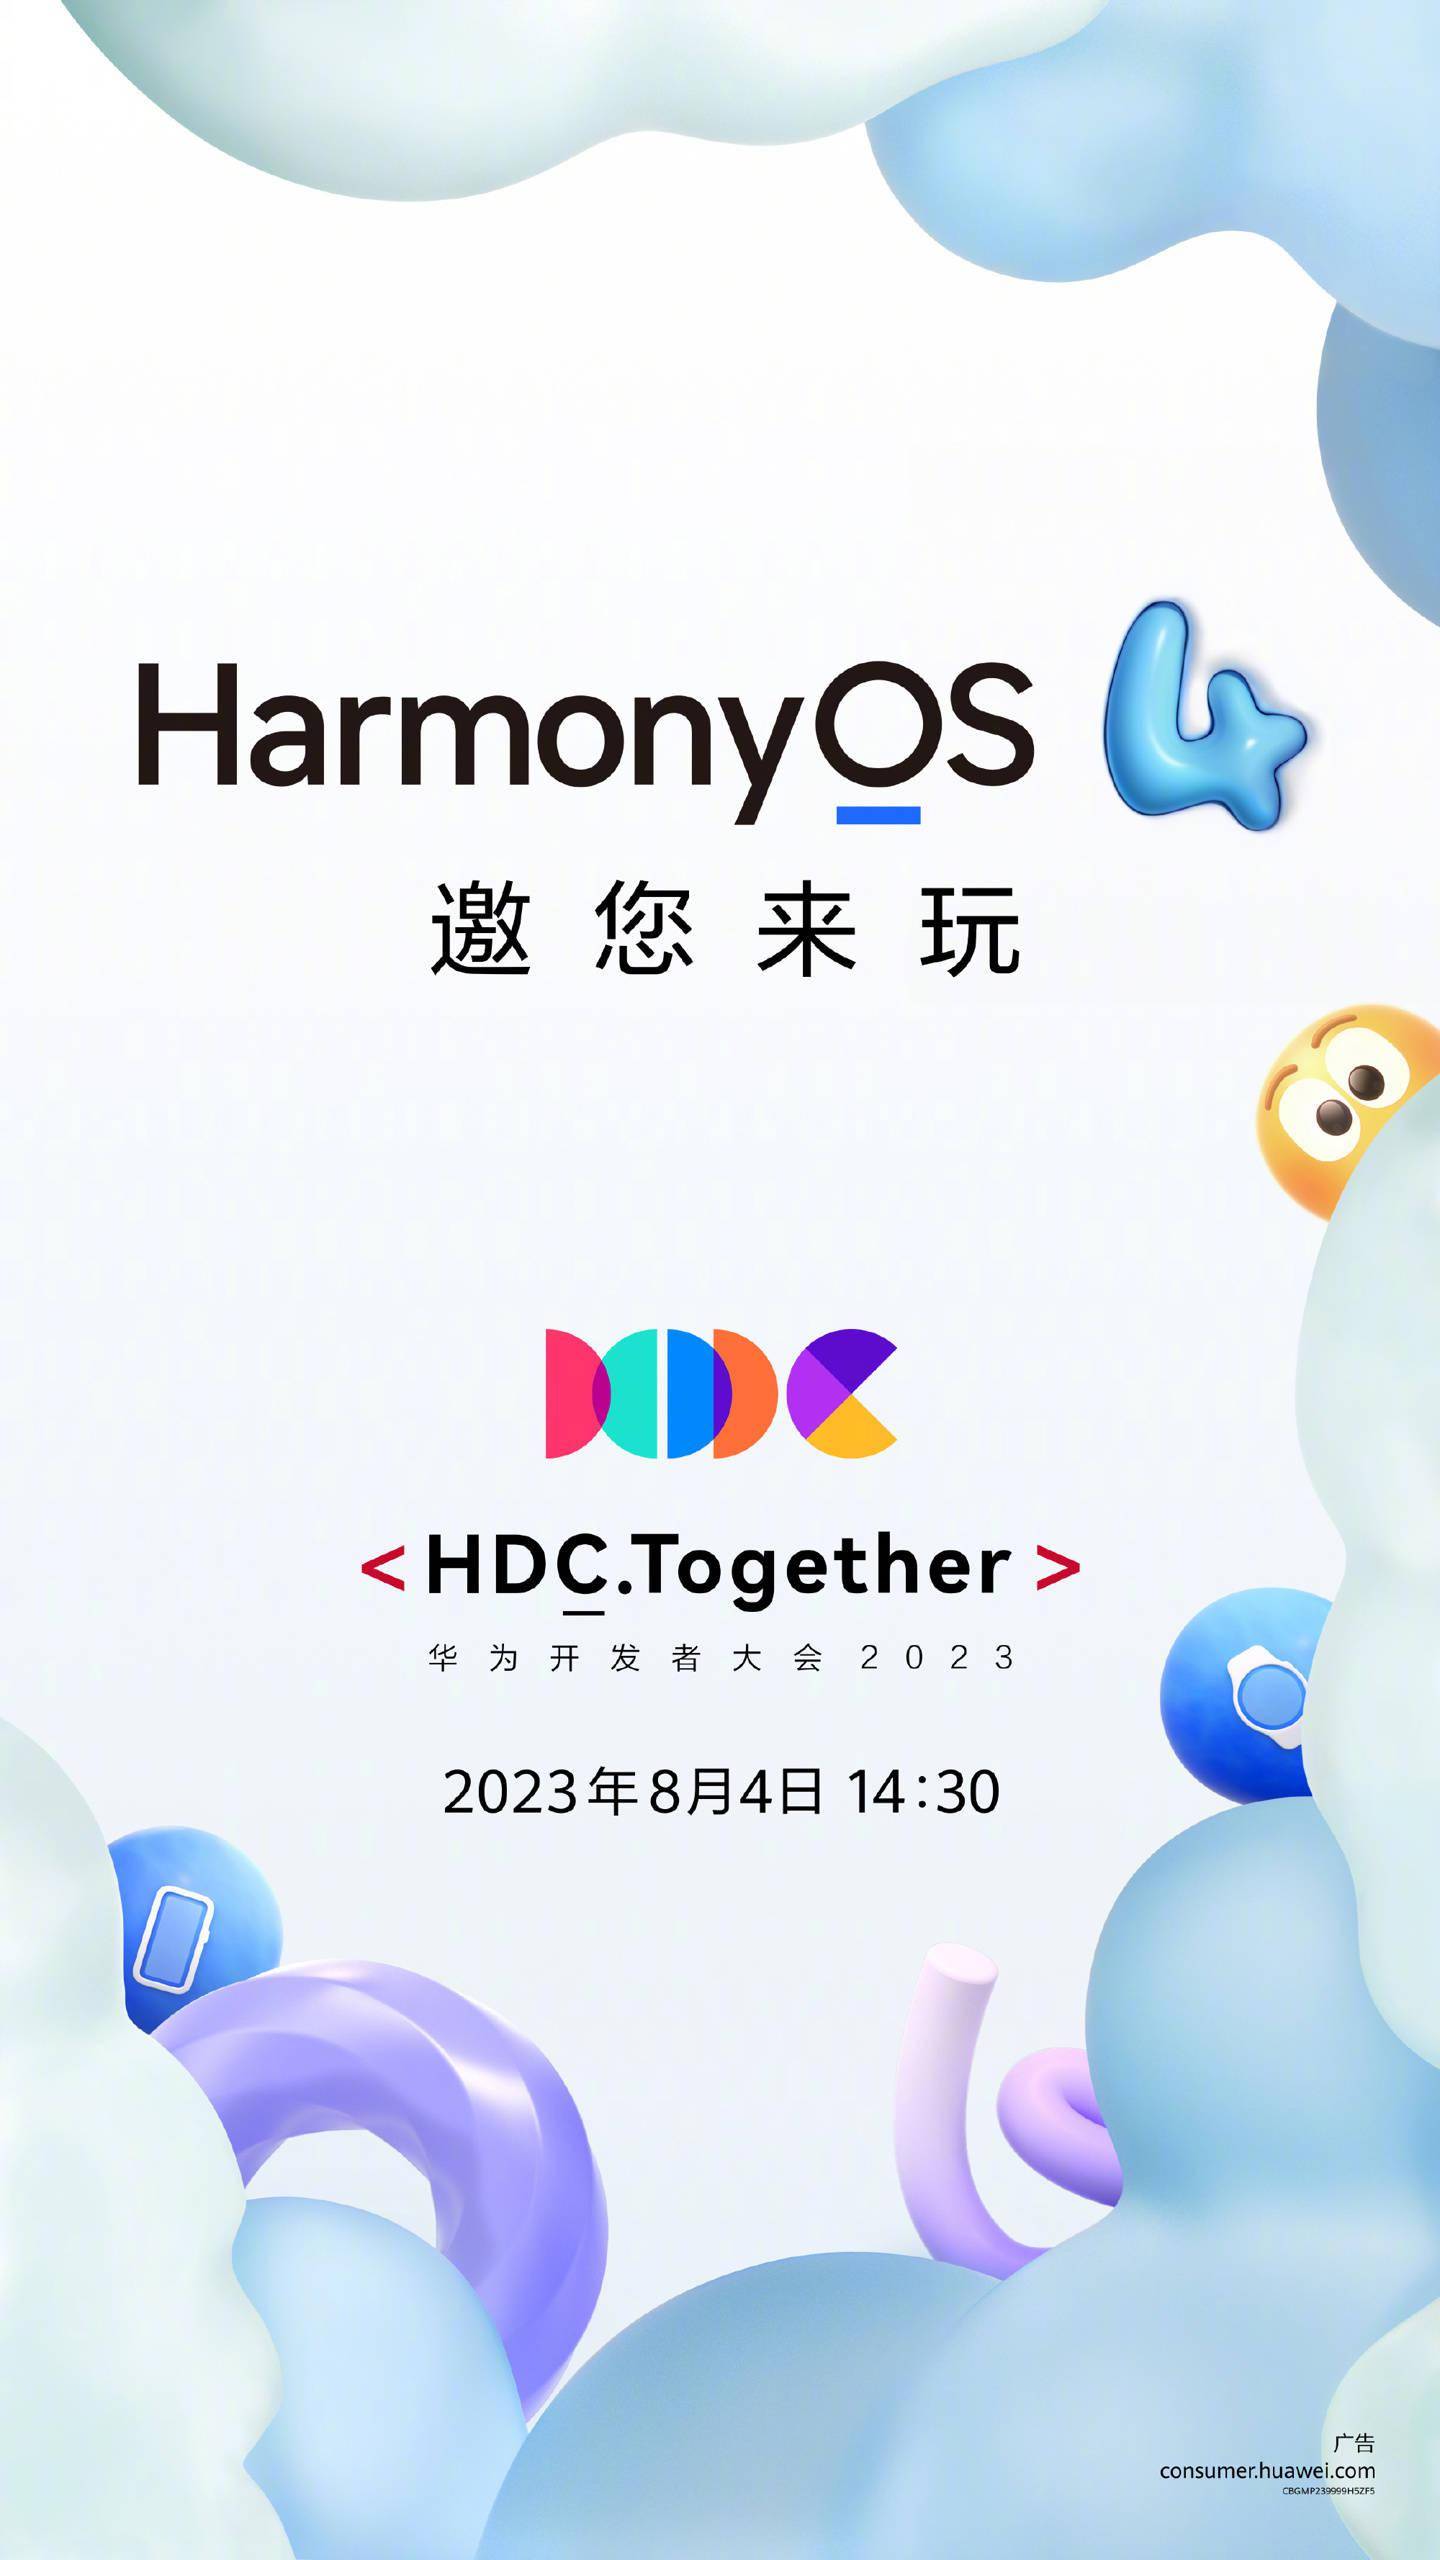 华为鸿蒙 HarmonyOS 4于8月4日发布 将引入语音识别、手势控制、触摸屏操作等